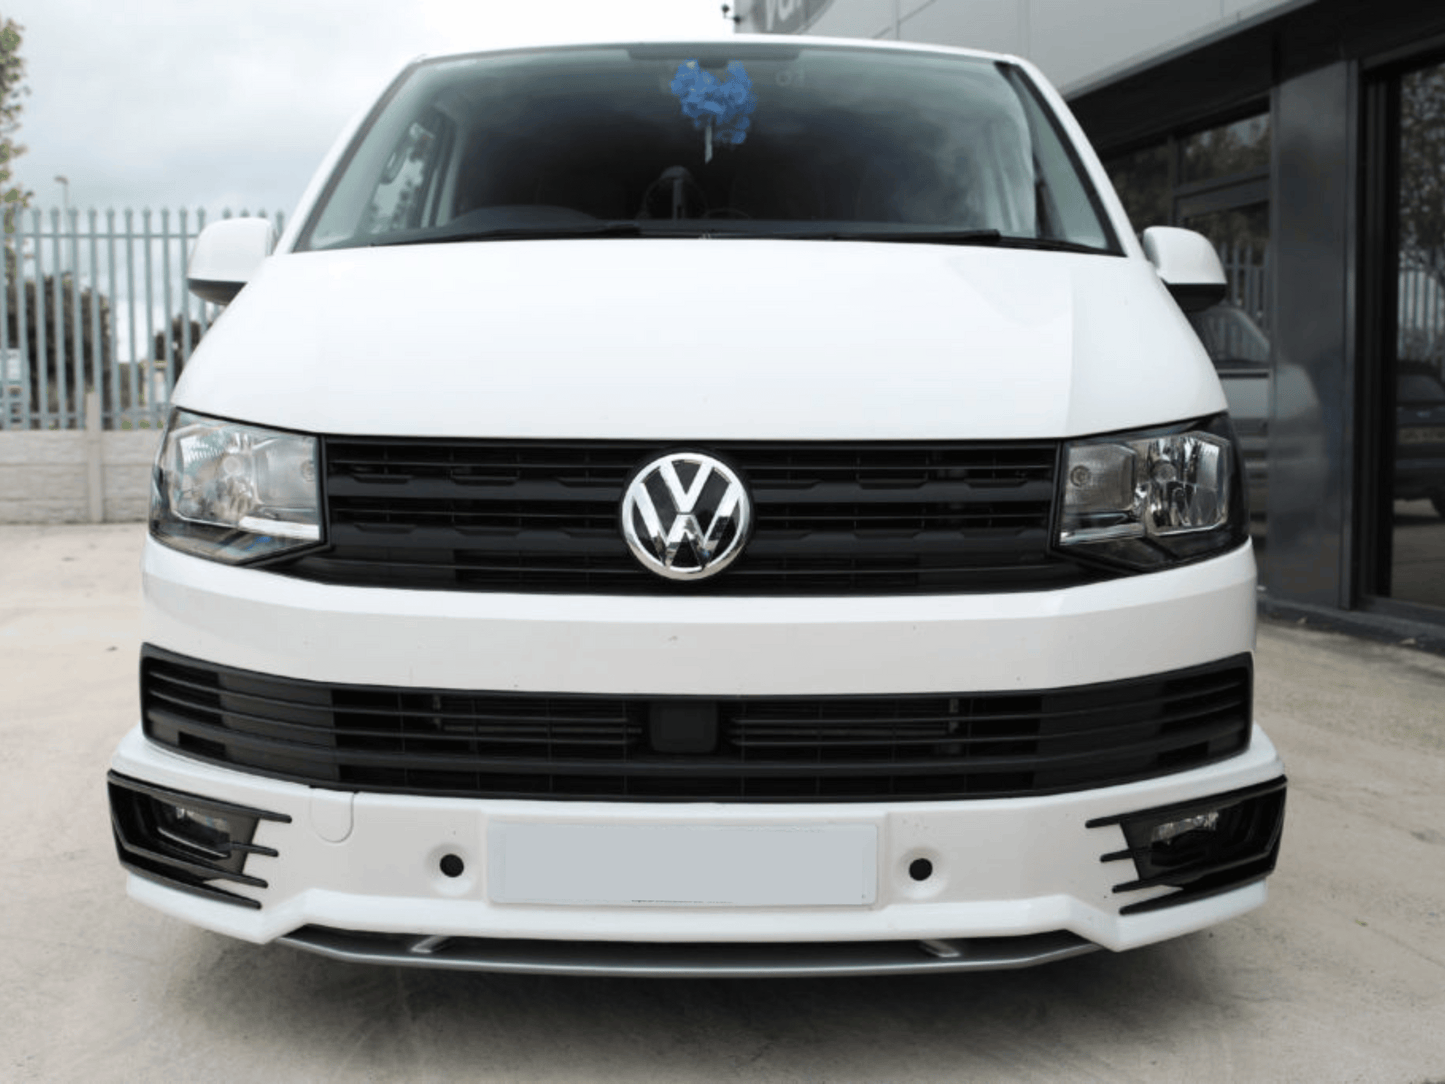 Adornos de Parrilla Delantera Estilo R-Line para VW Transporter T6 - Negro Brillante